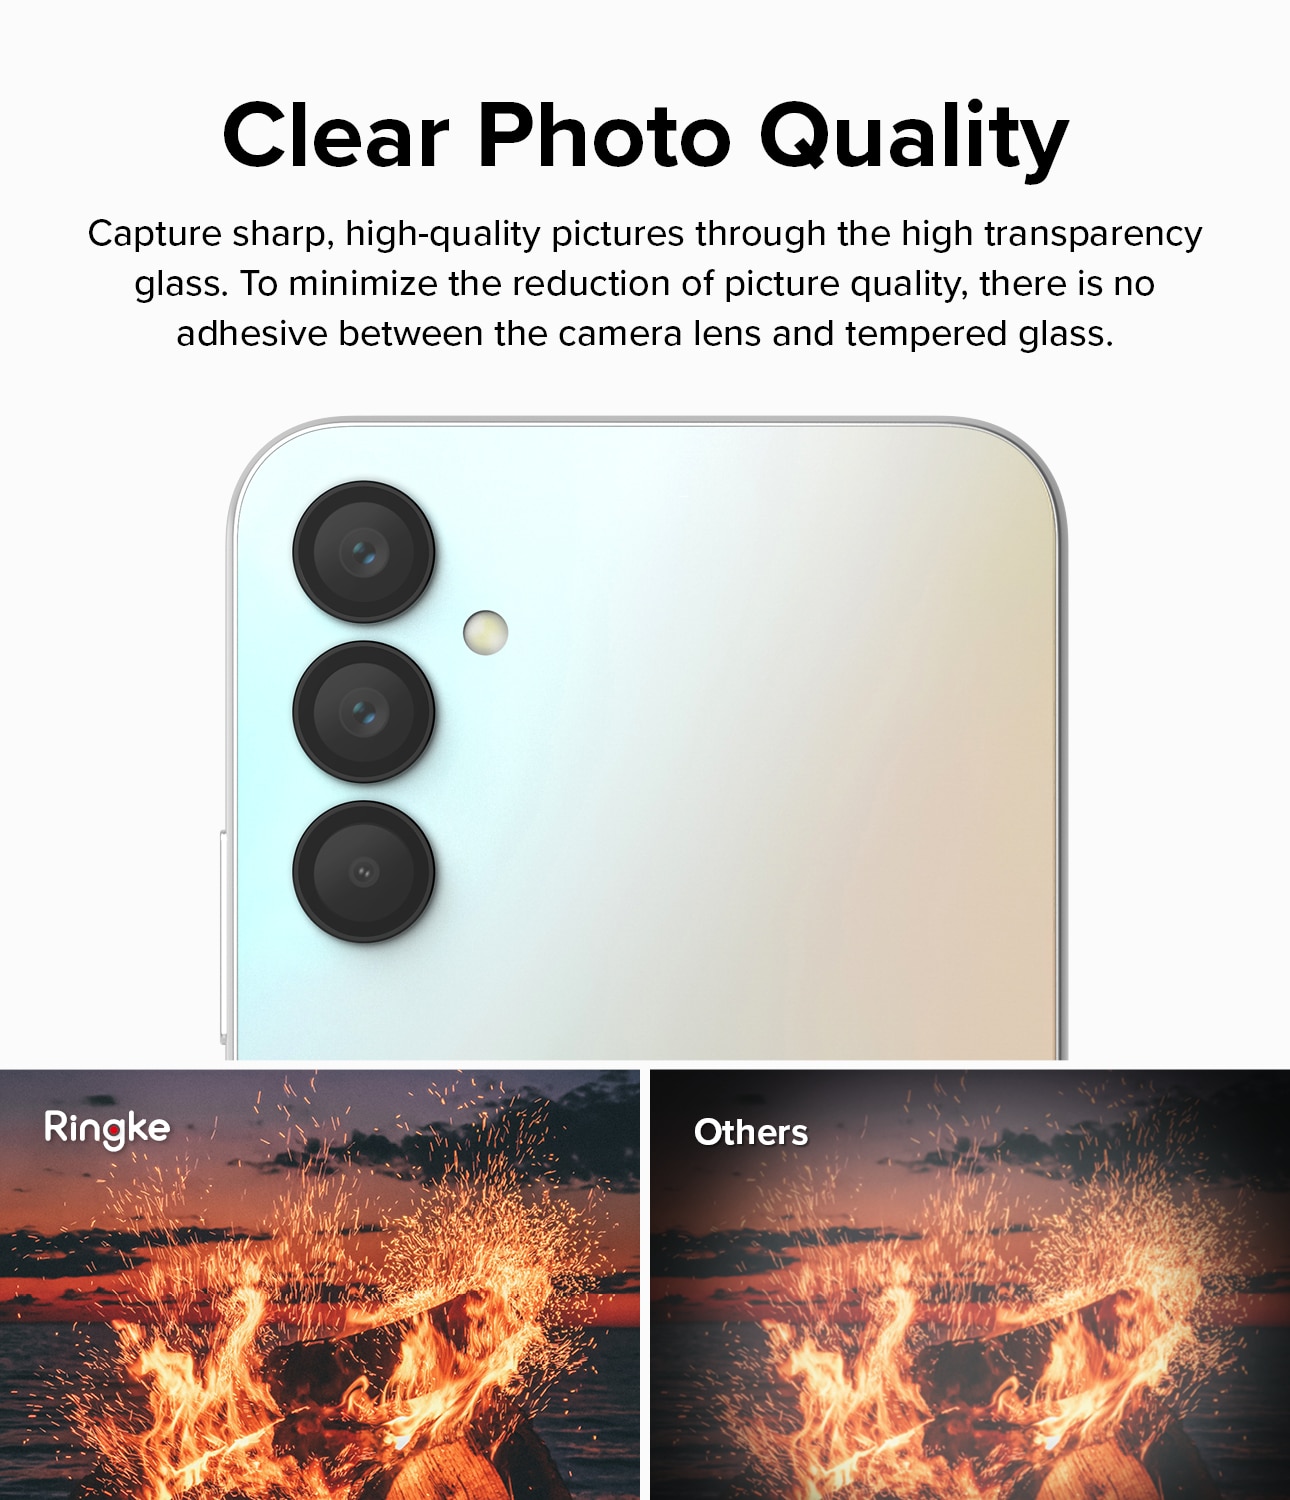 Camera Lens Frame Glass Samsung Galaxy A24 Black